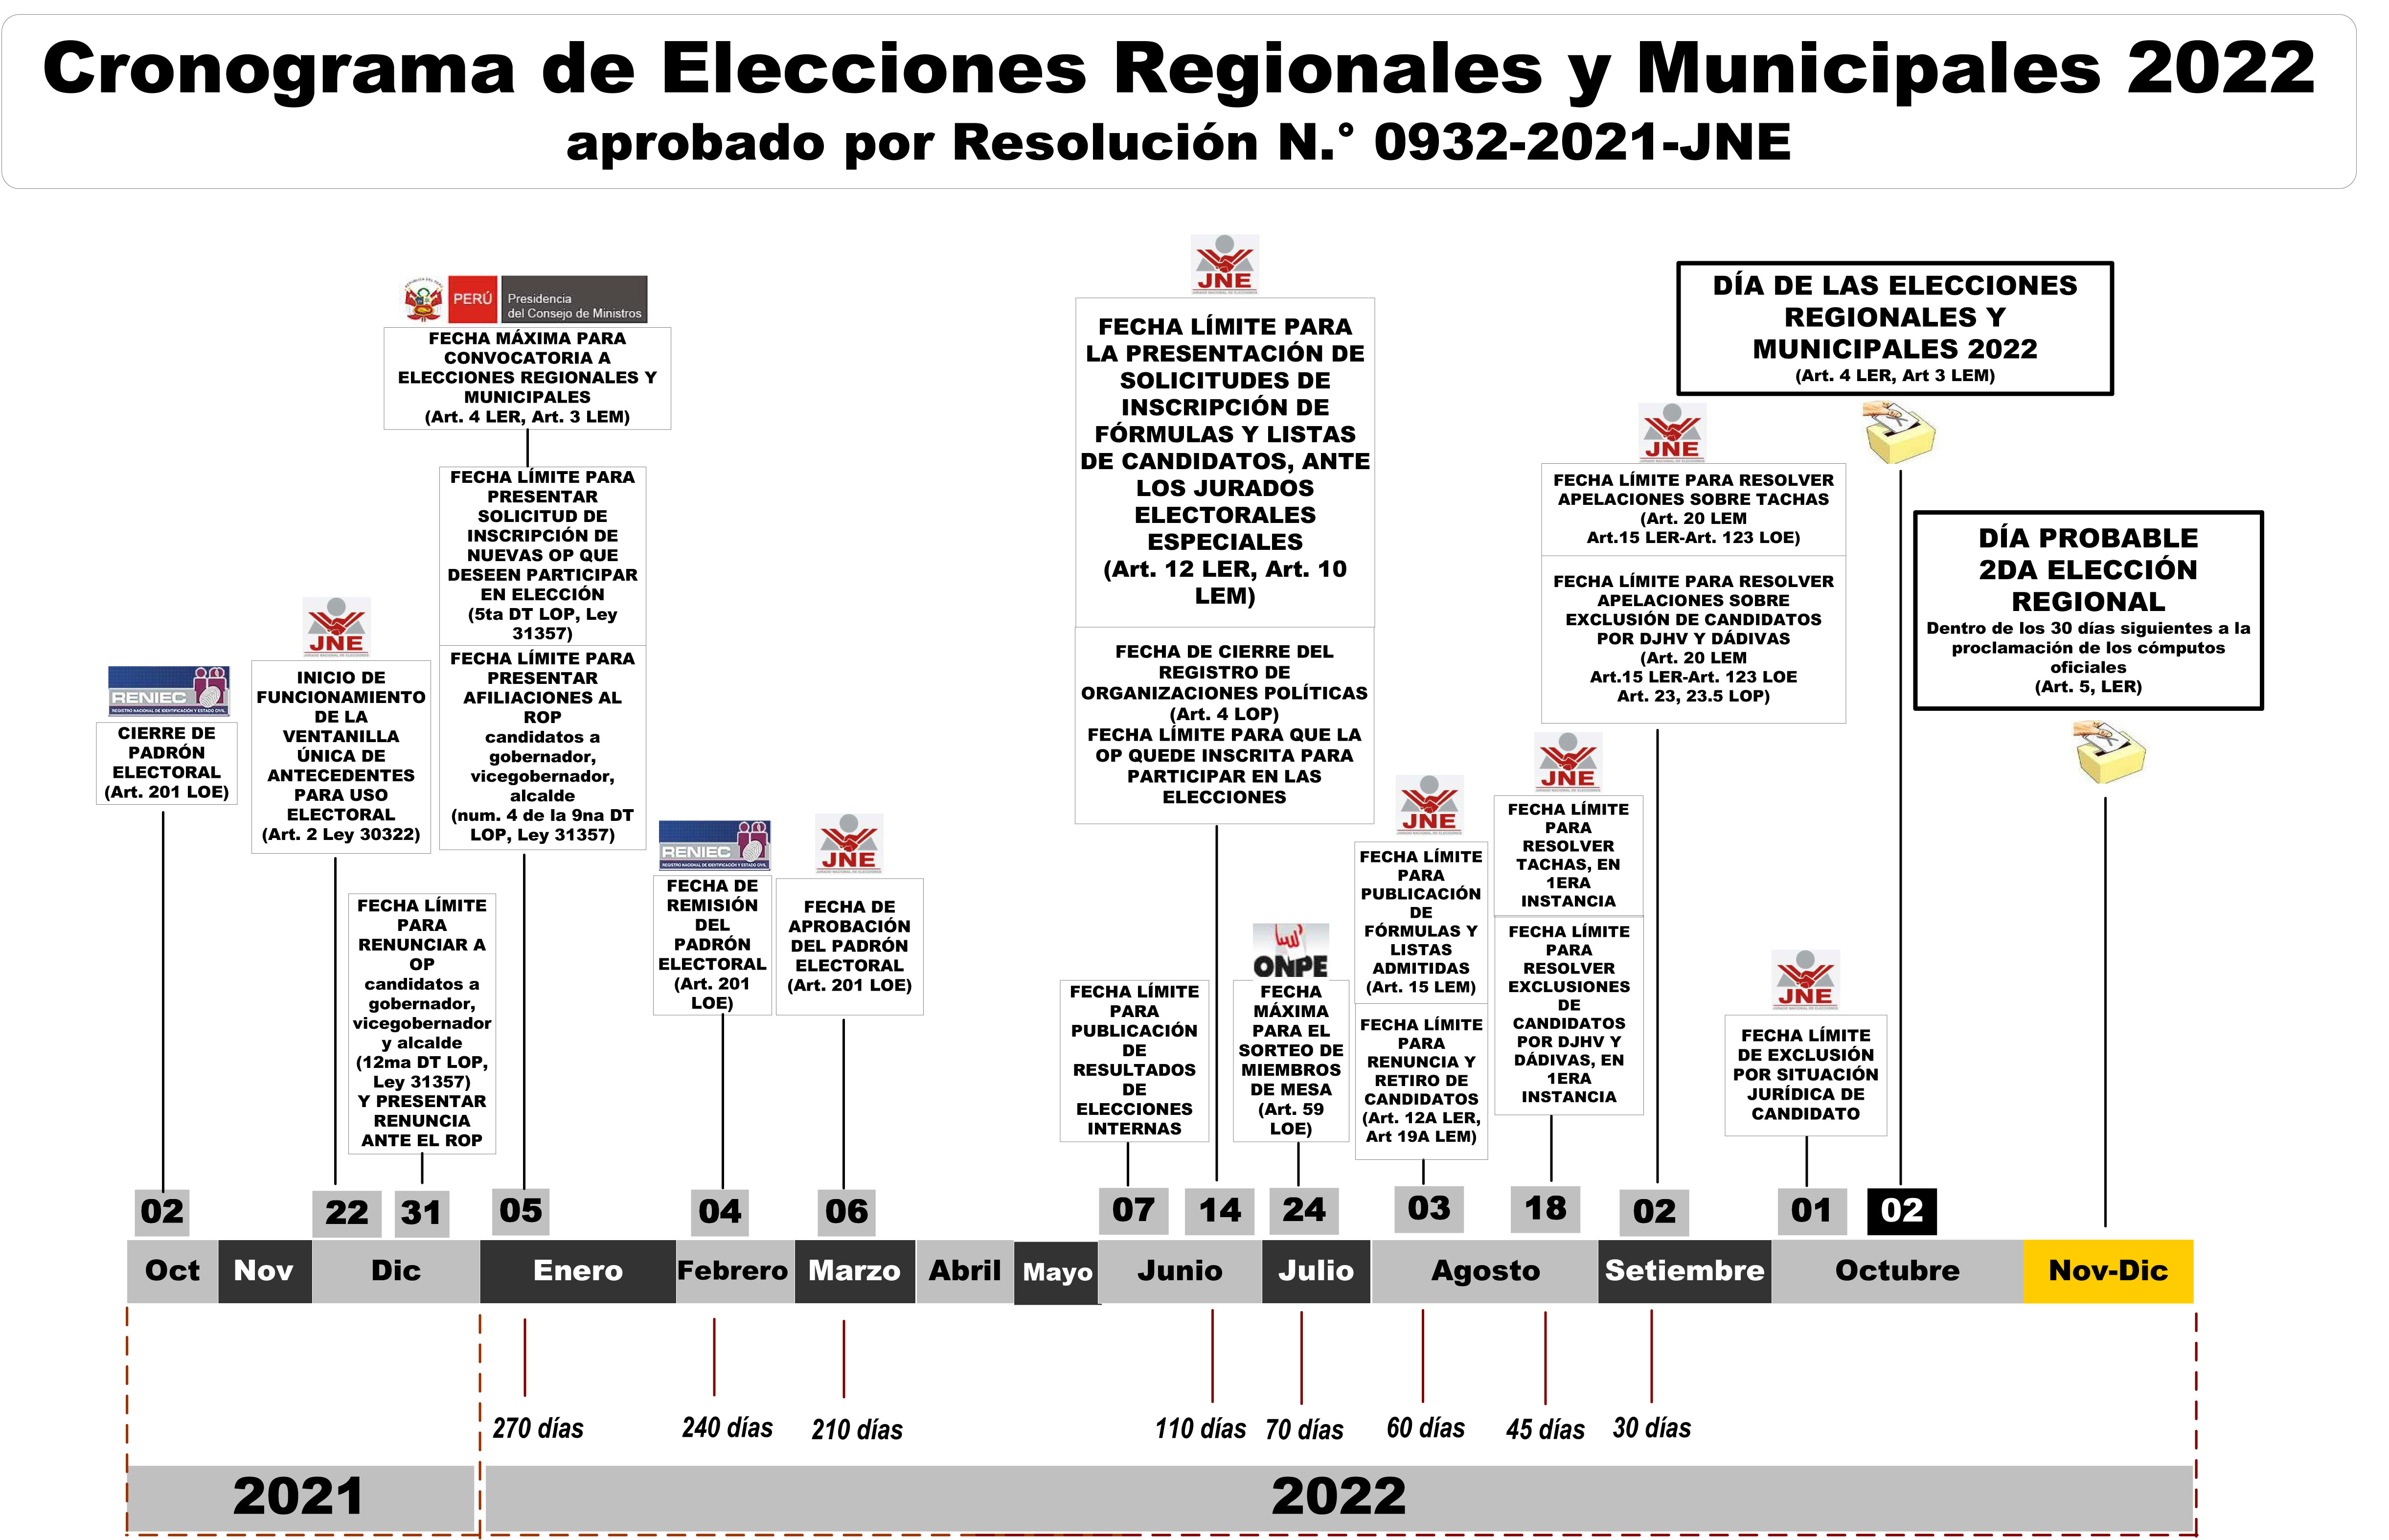 Cronograma de las Elecciones Regionales y Municipales 2022